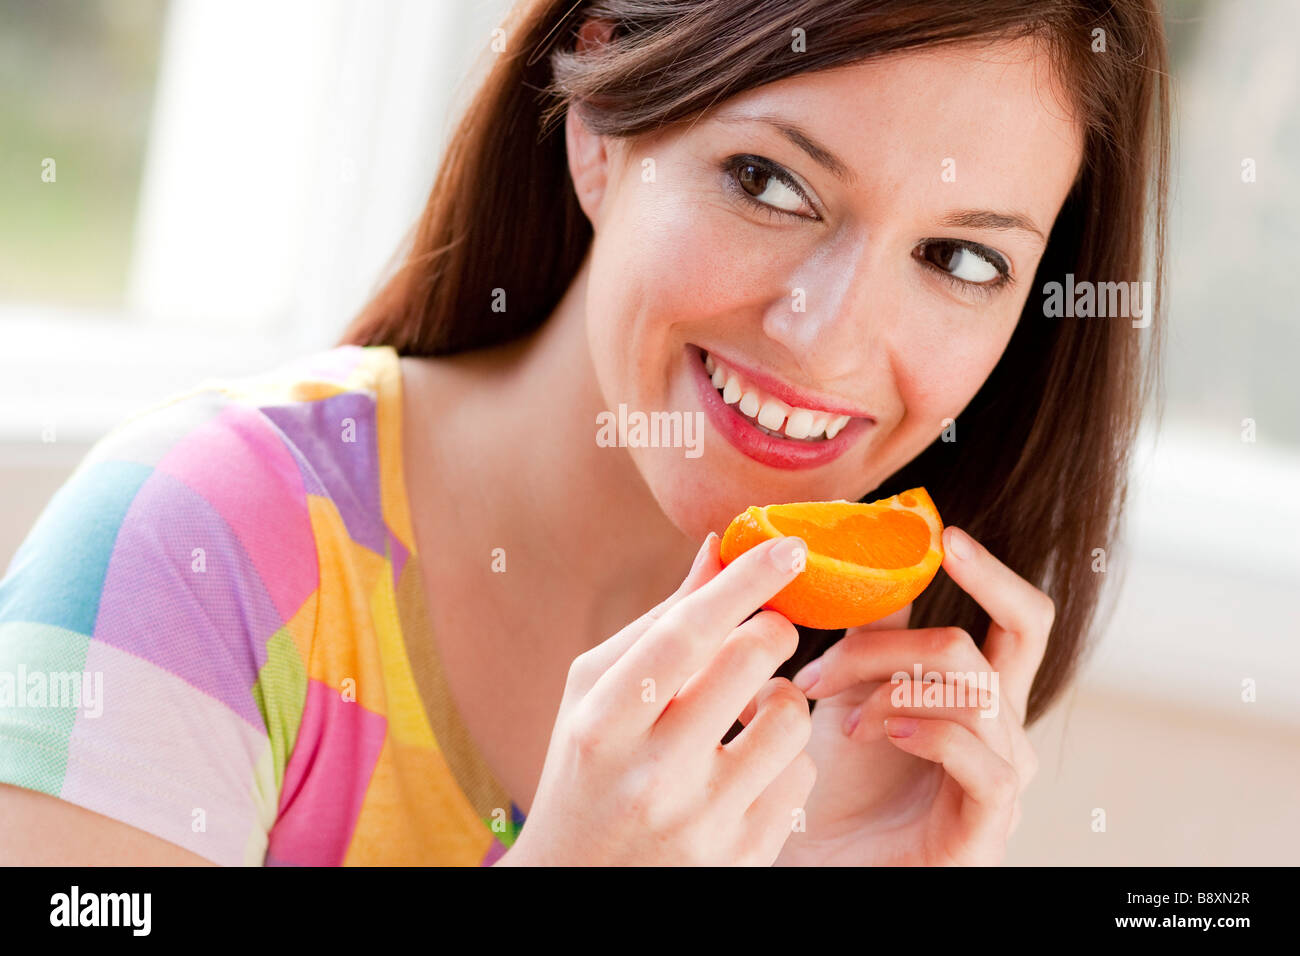 Woman eating a Orange segment Stock Photo